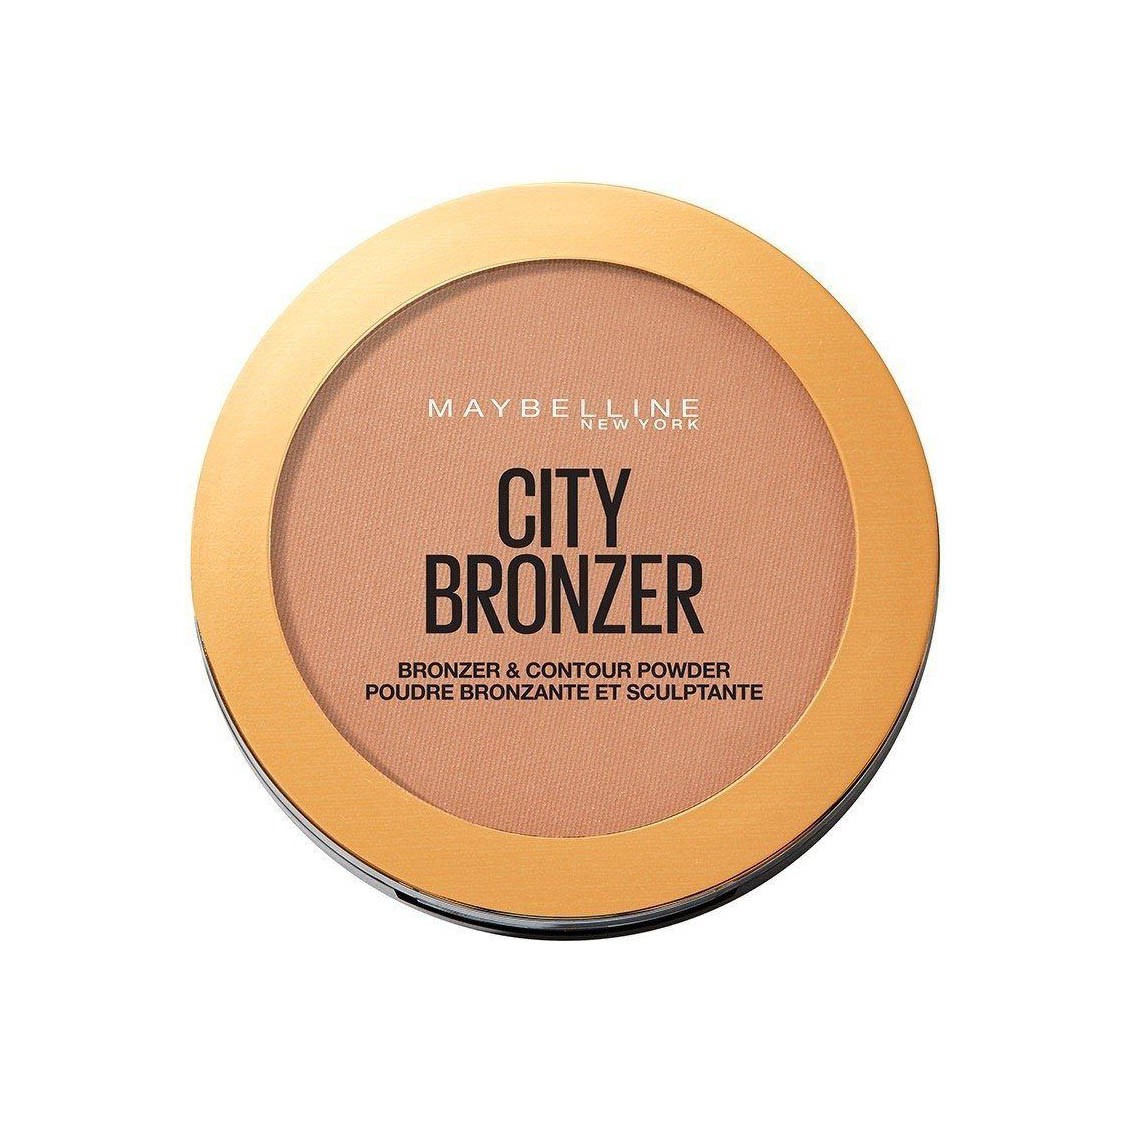 City Bronzer - Bronzer & Contour Powder